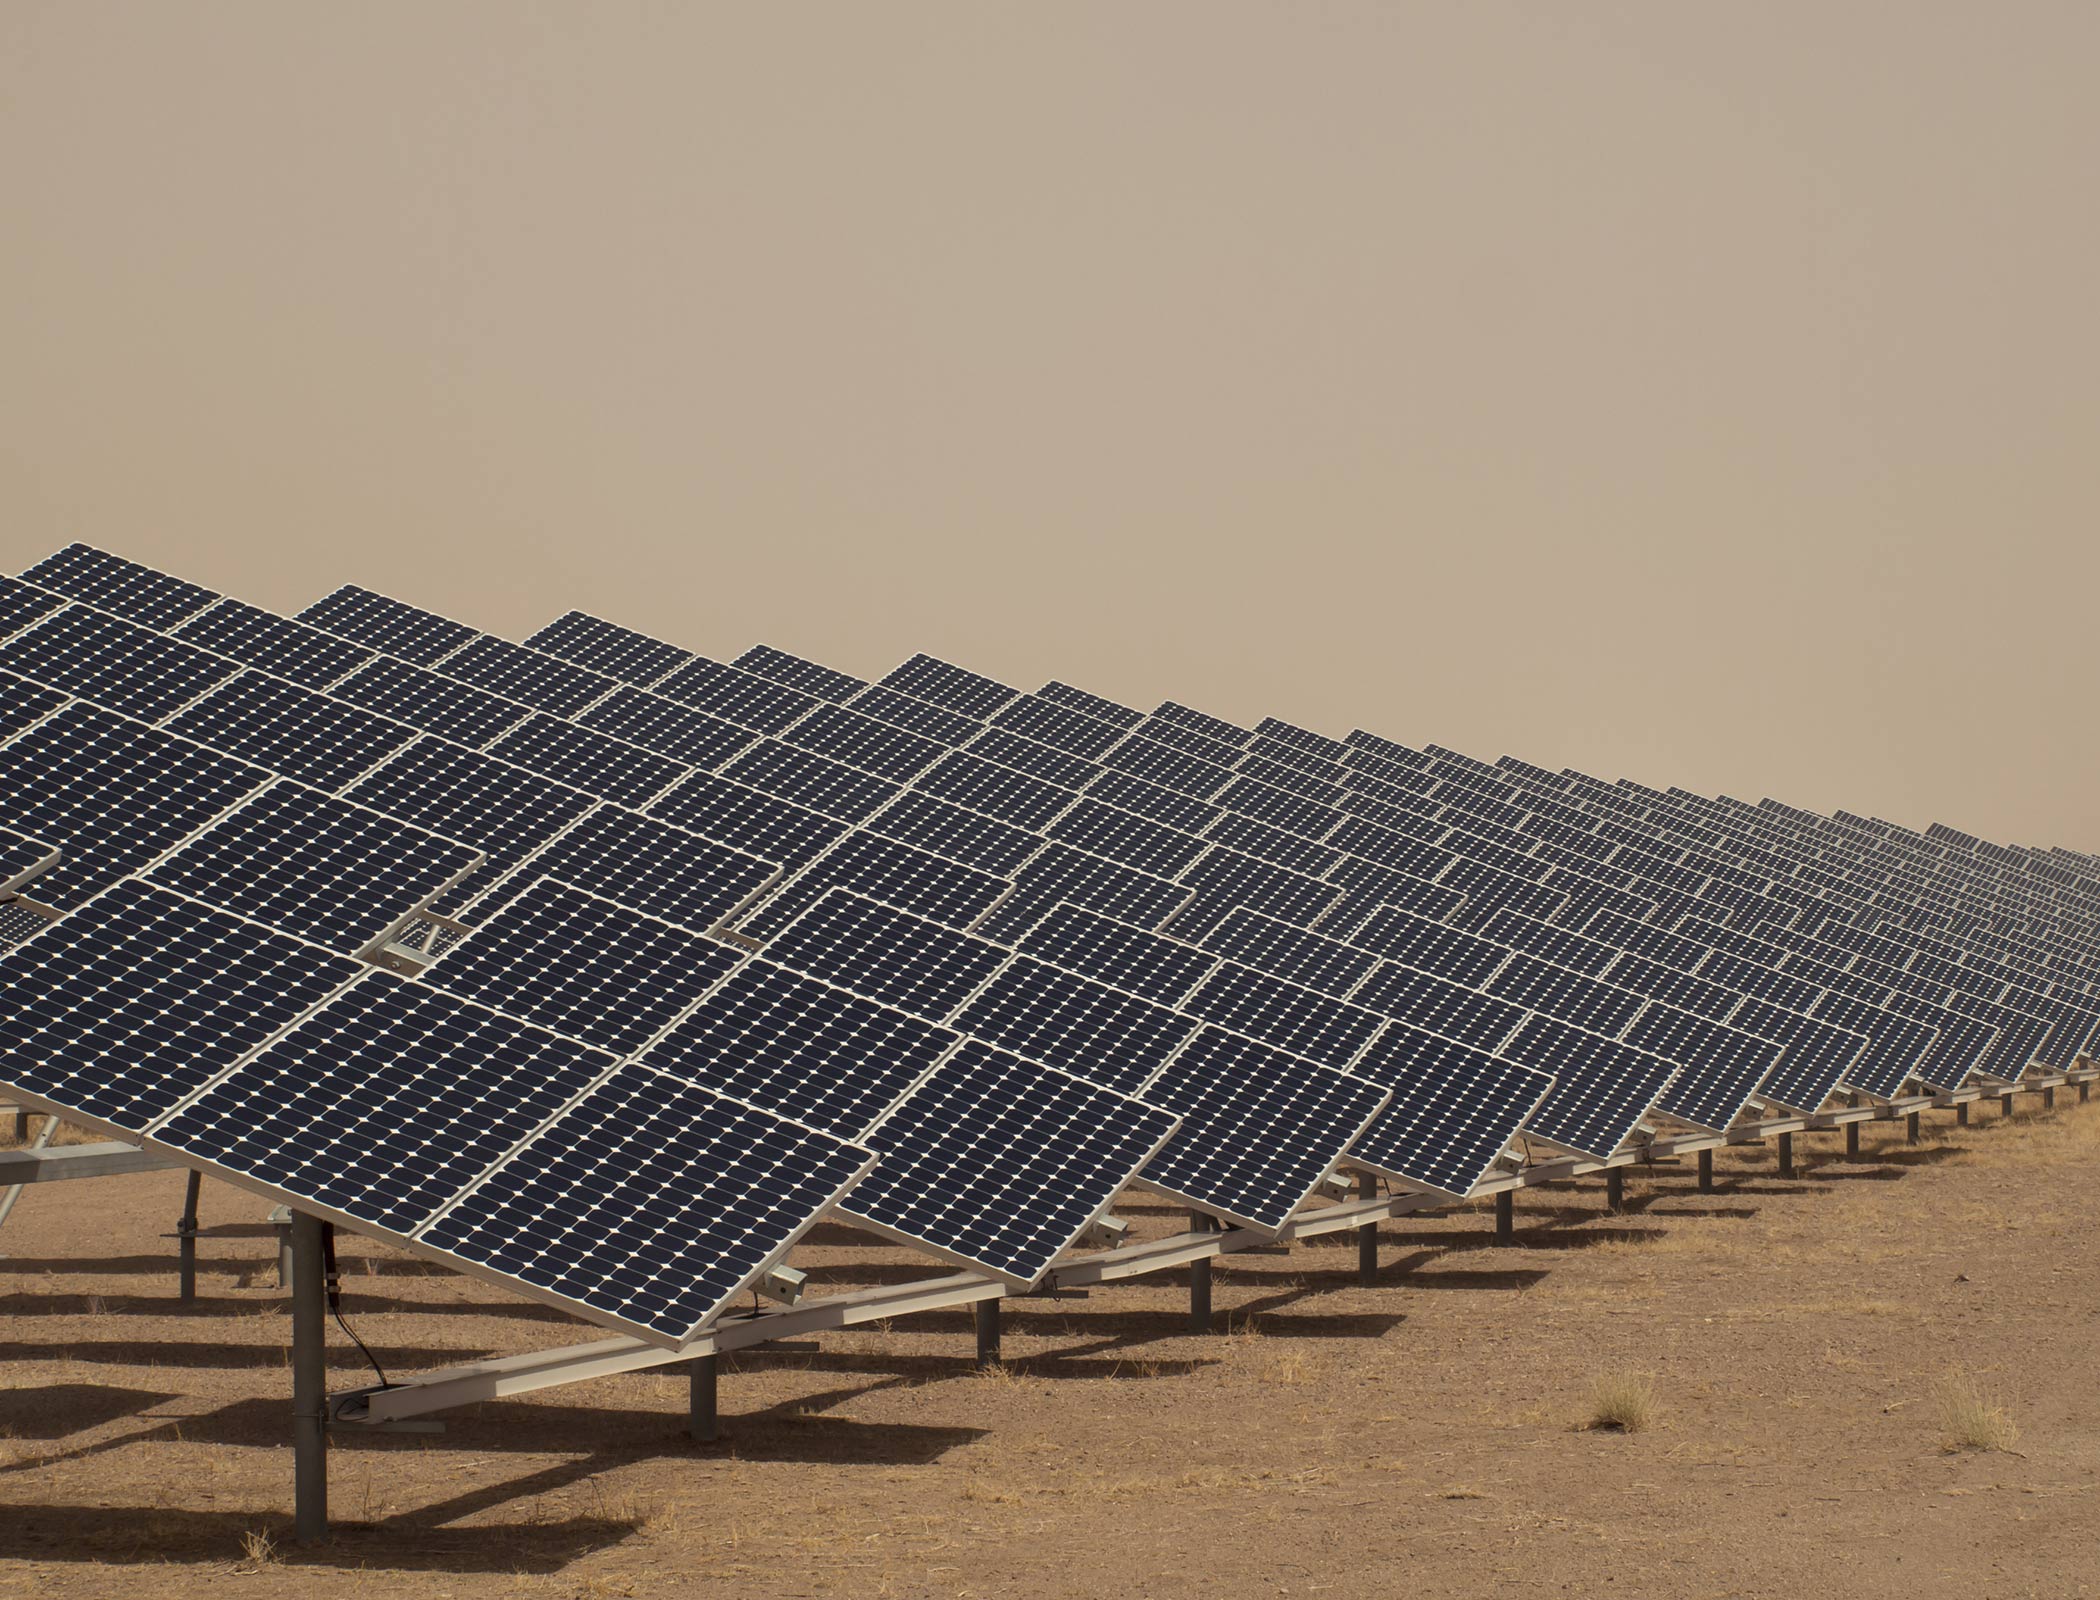 UAE opens giant solar plant in Abu Dhabi desert